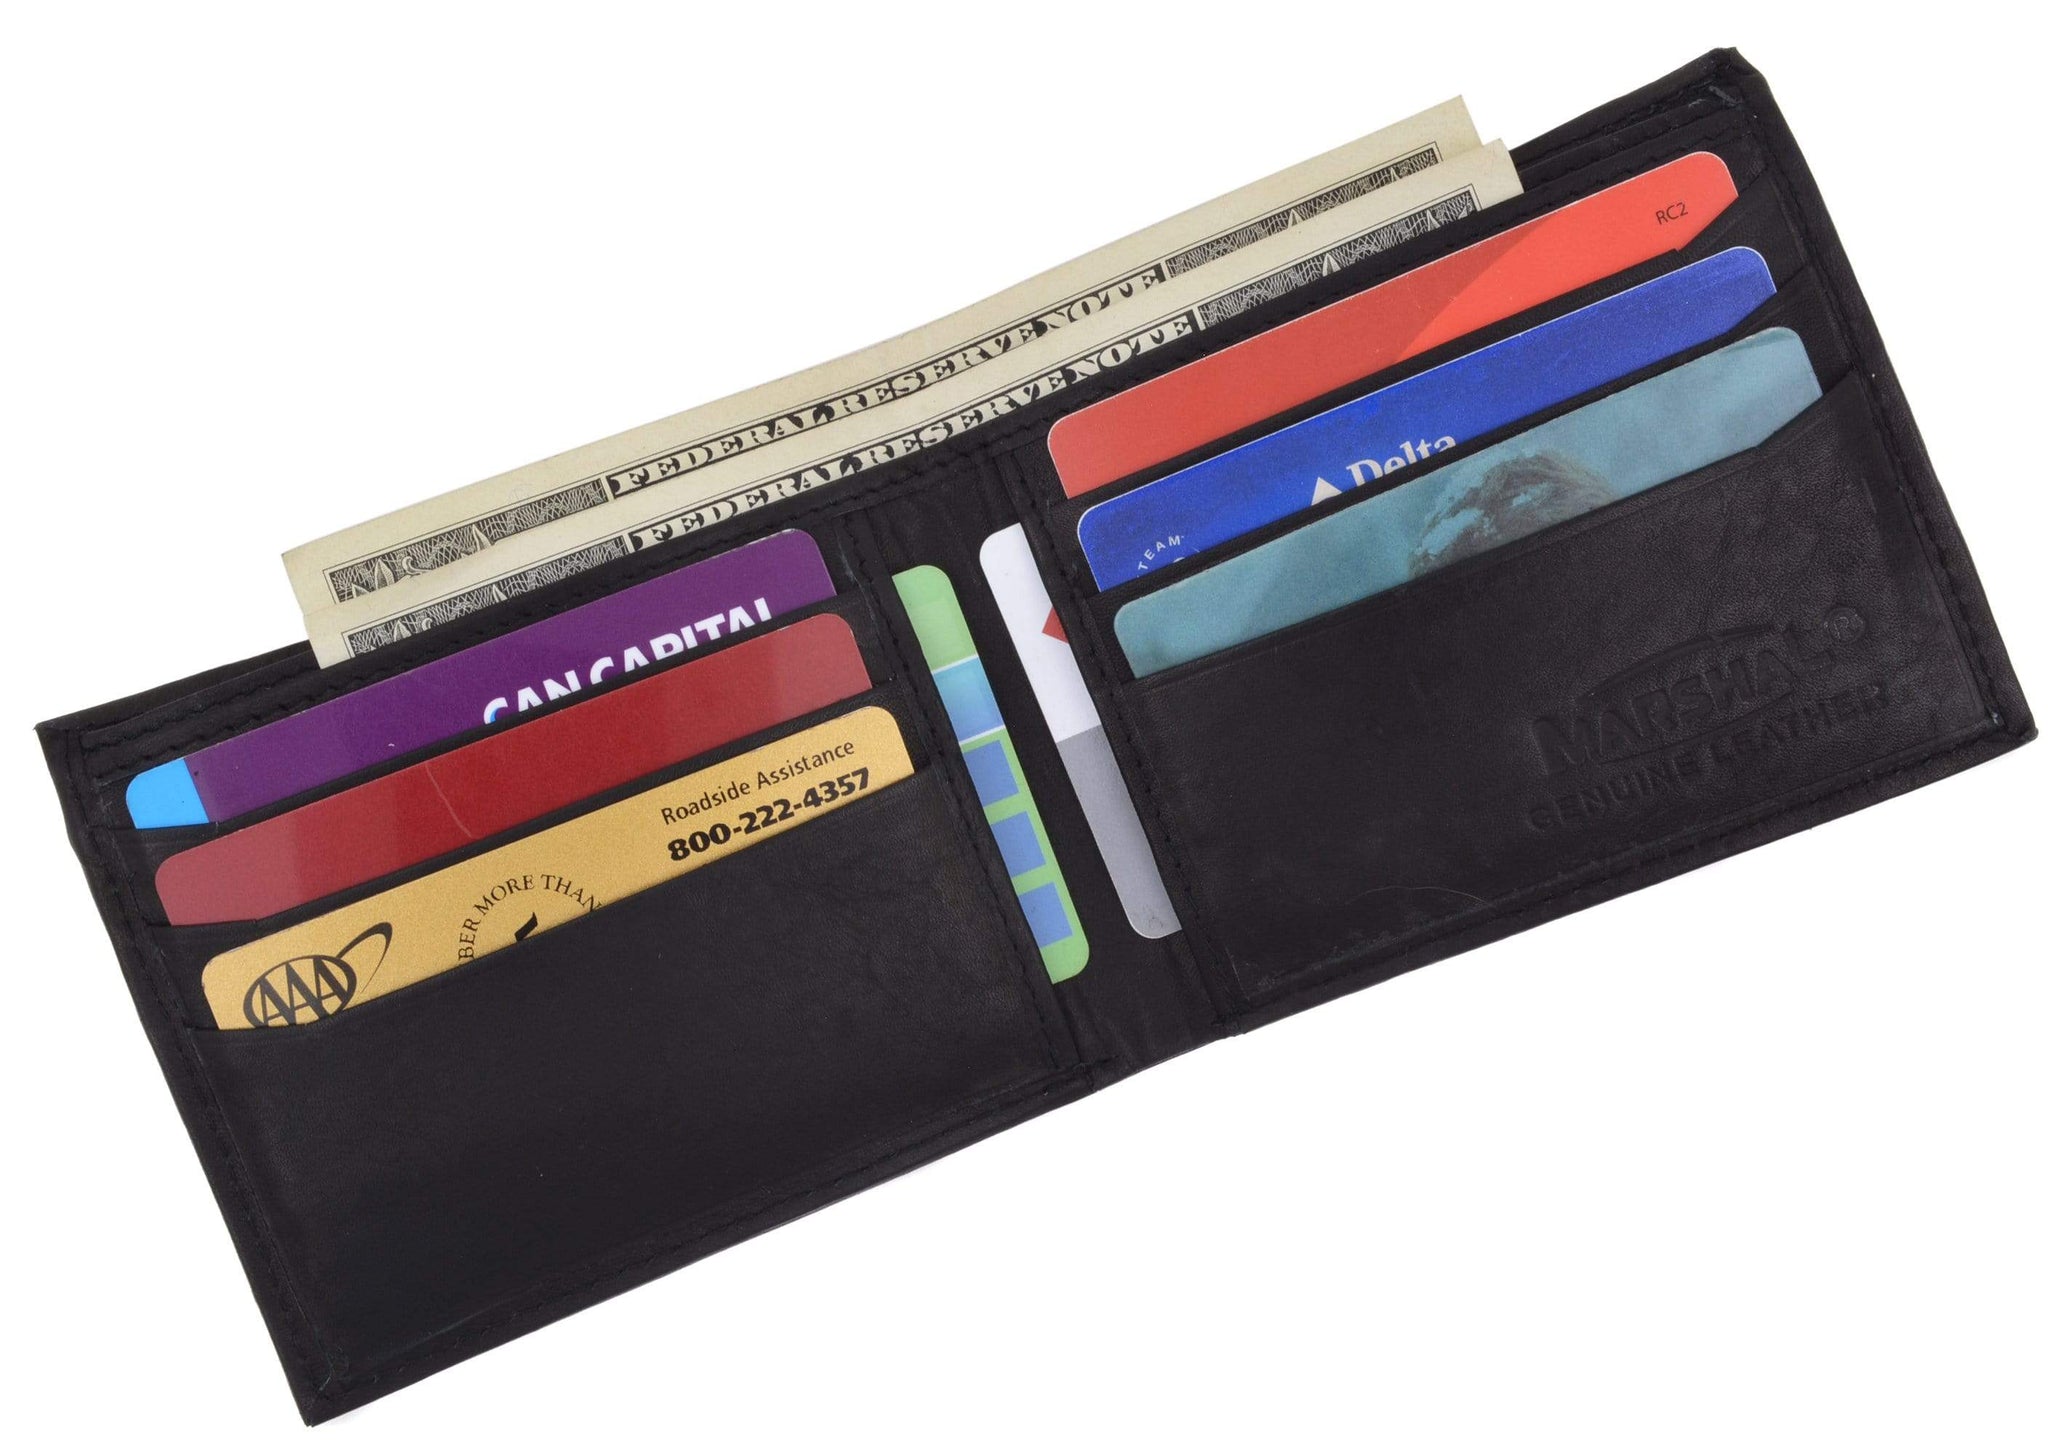 Premium Classic Intrecciato Bi-fold Men Wallet – Yard of Deals